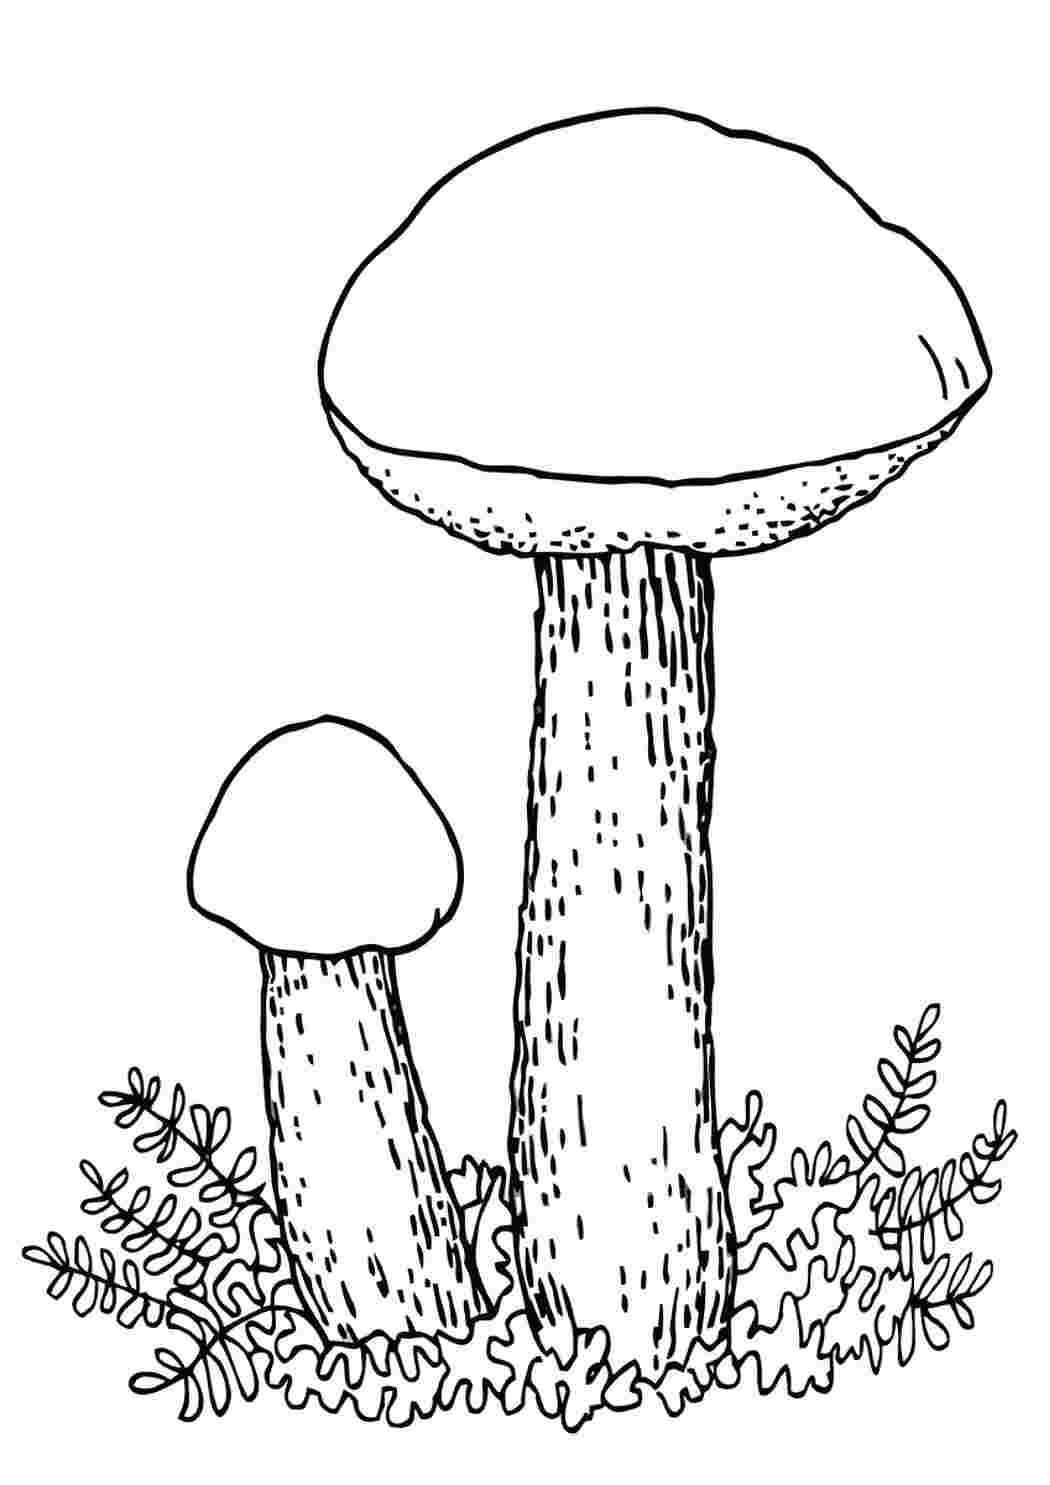 Как нарисовать подберезовик грибы | Раскраски, Рисунки, Грибы